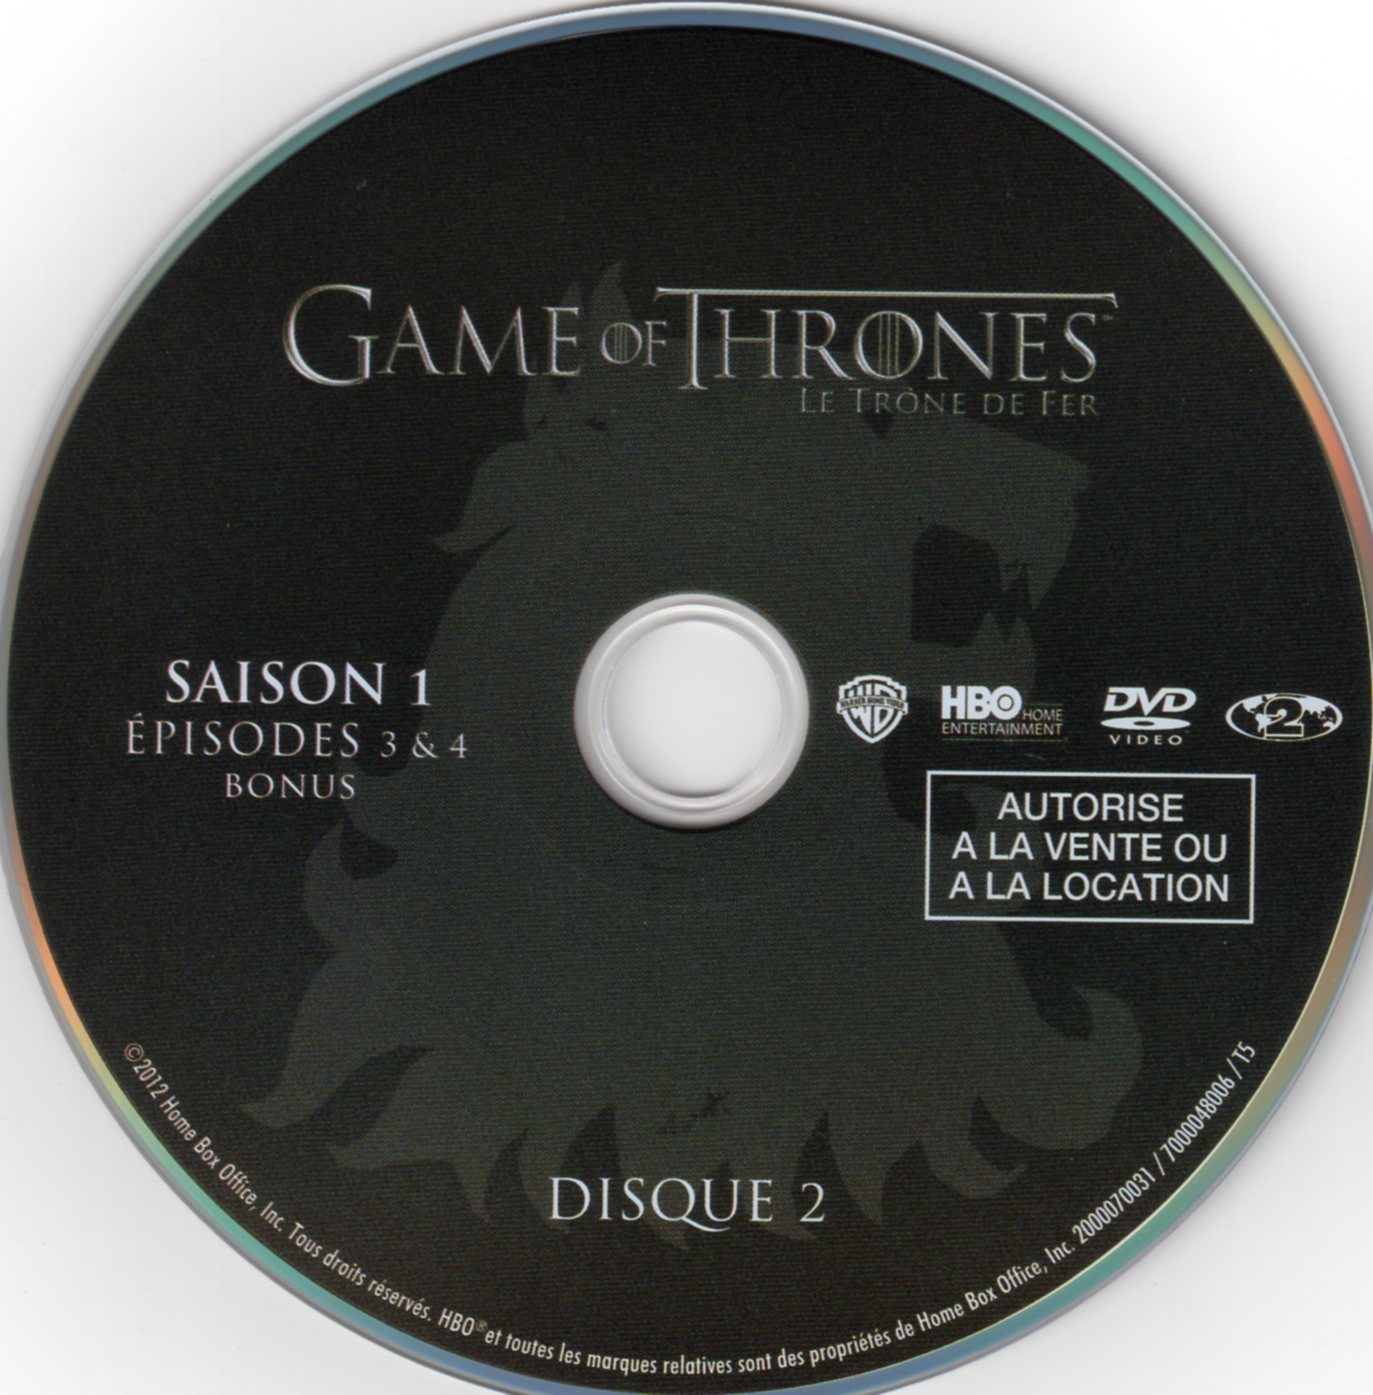 Game of thrones (le trone de fer) Saison 1 DVD 2